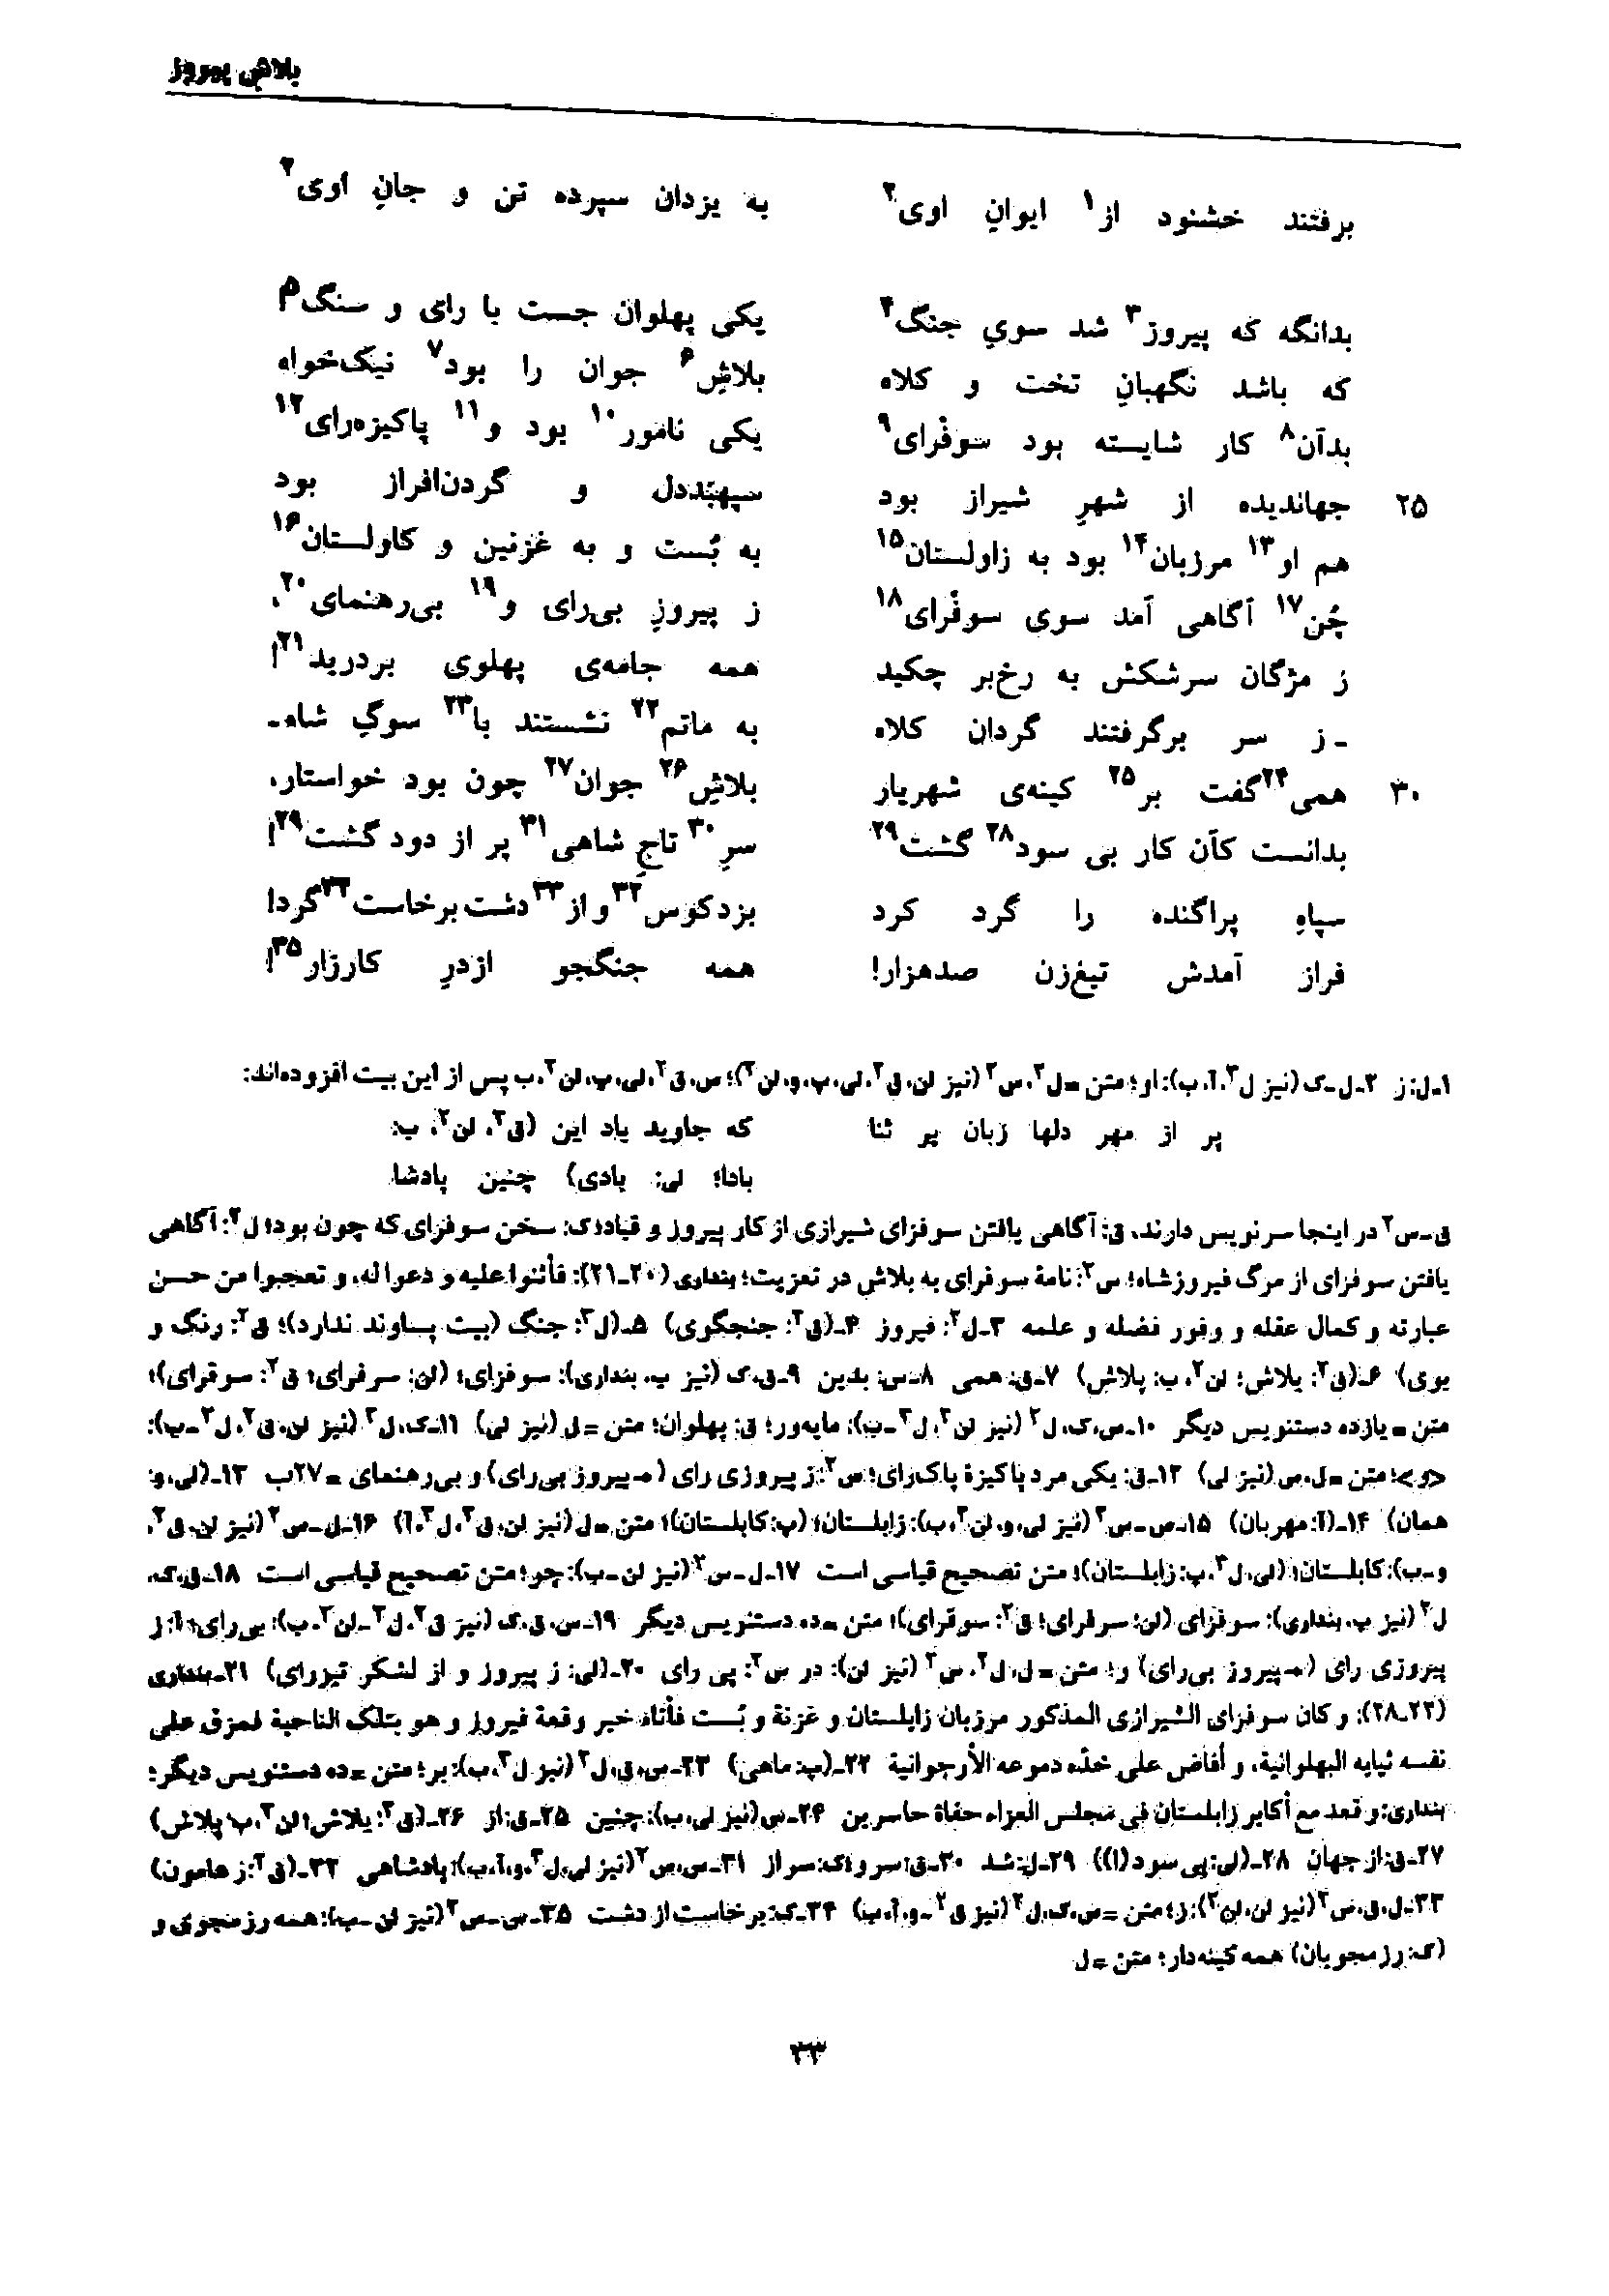 vol. 7, p. 33